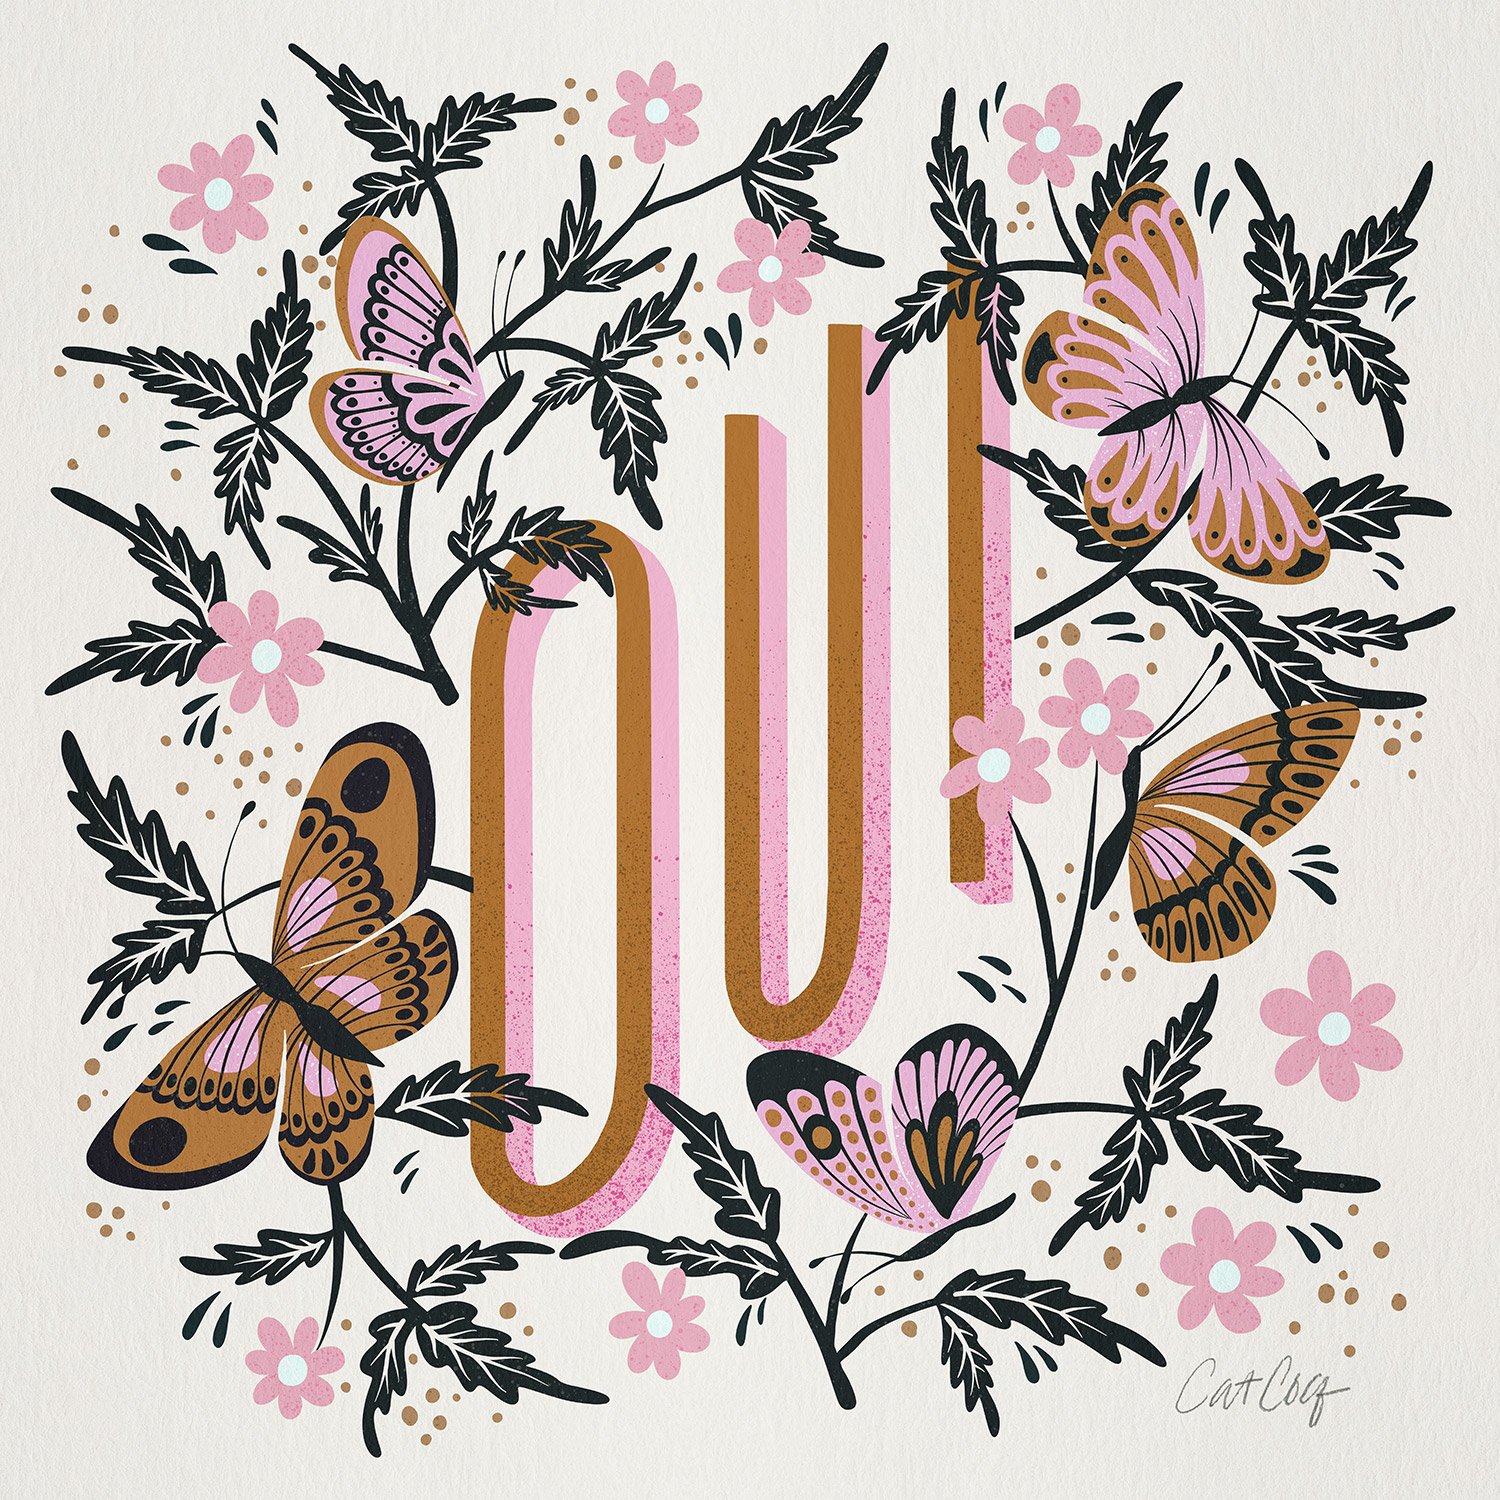 PinkGold-OuiButterflies-artprint.jpg